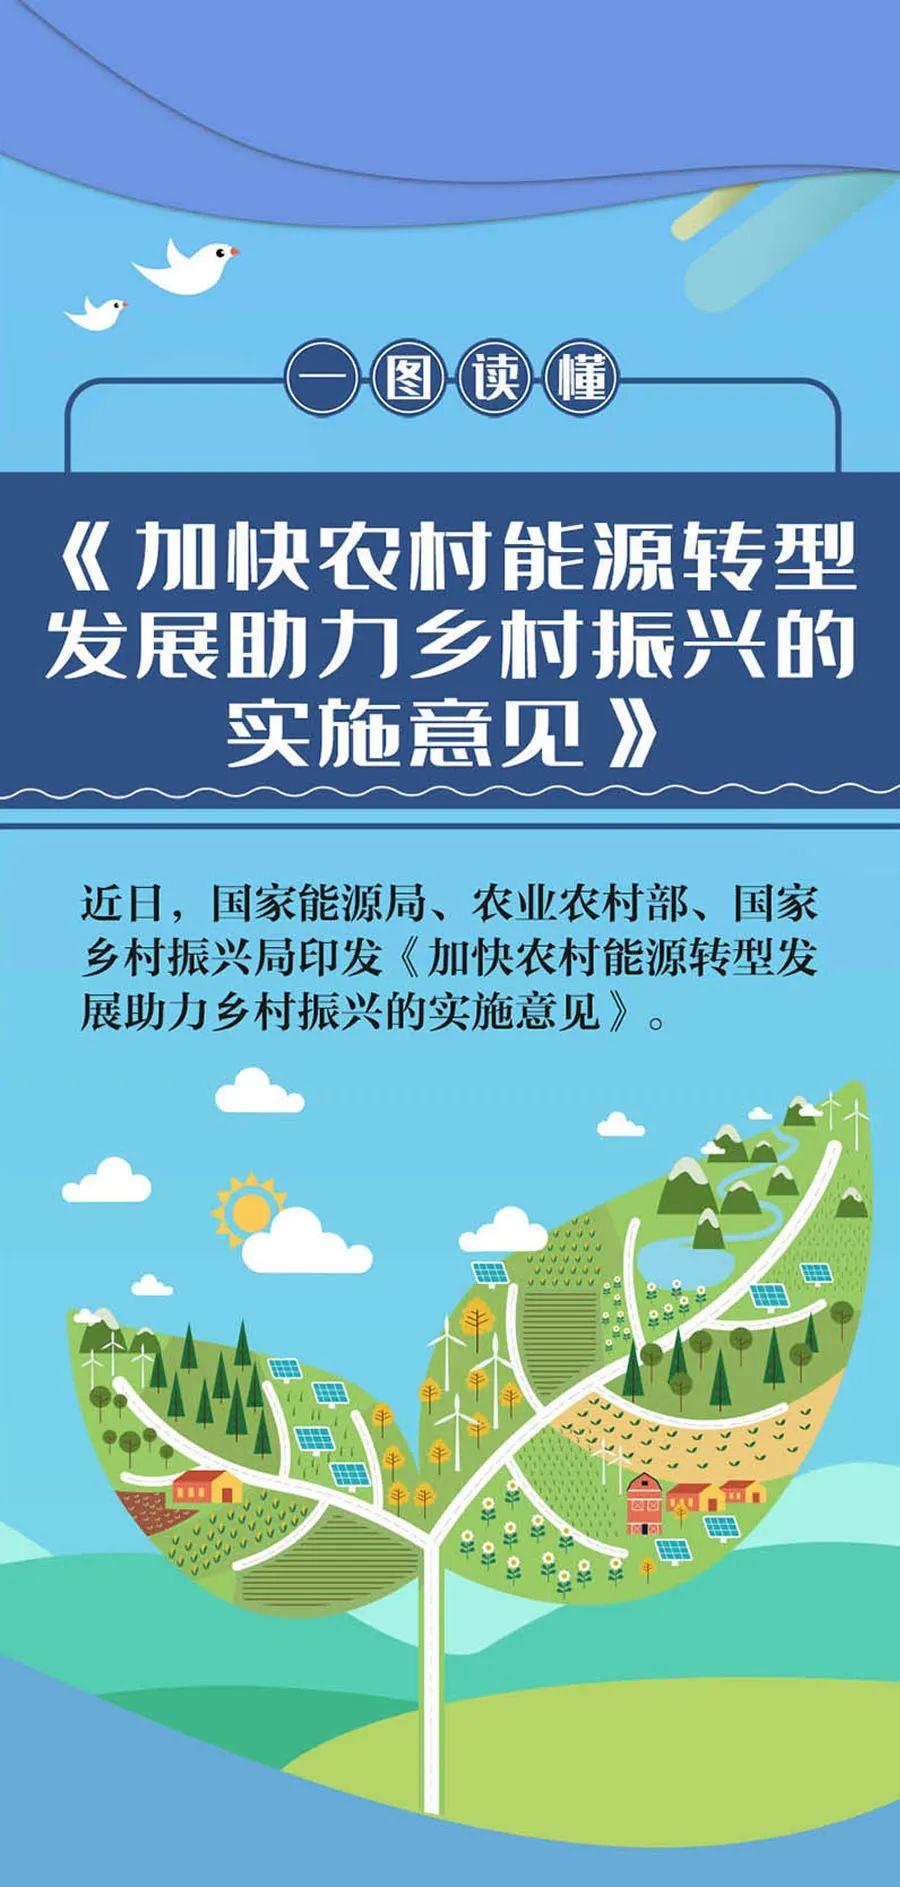 政策丨关于印发《上海市住房和城乡建设管理委员会2023年数字化转型工作要点》的通知